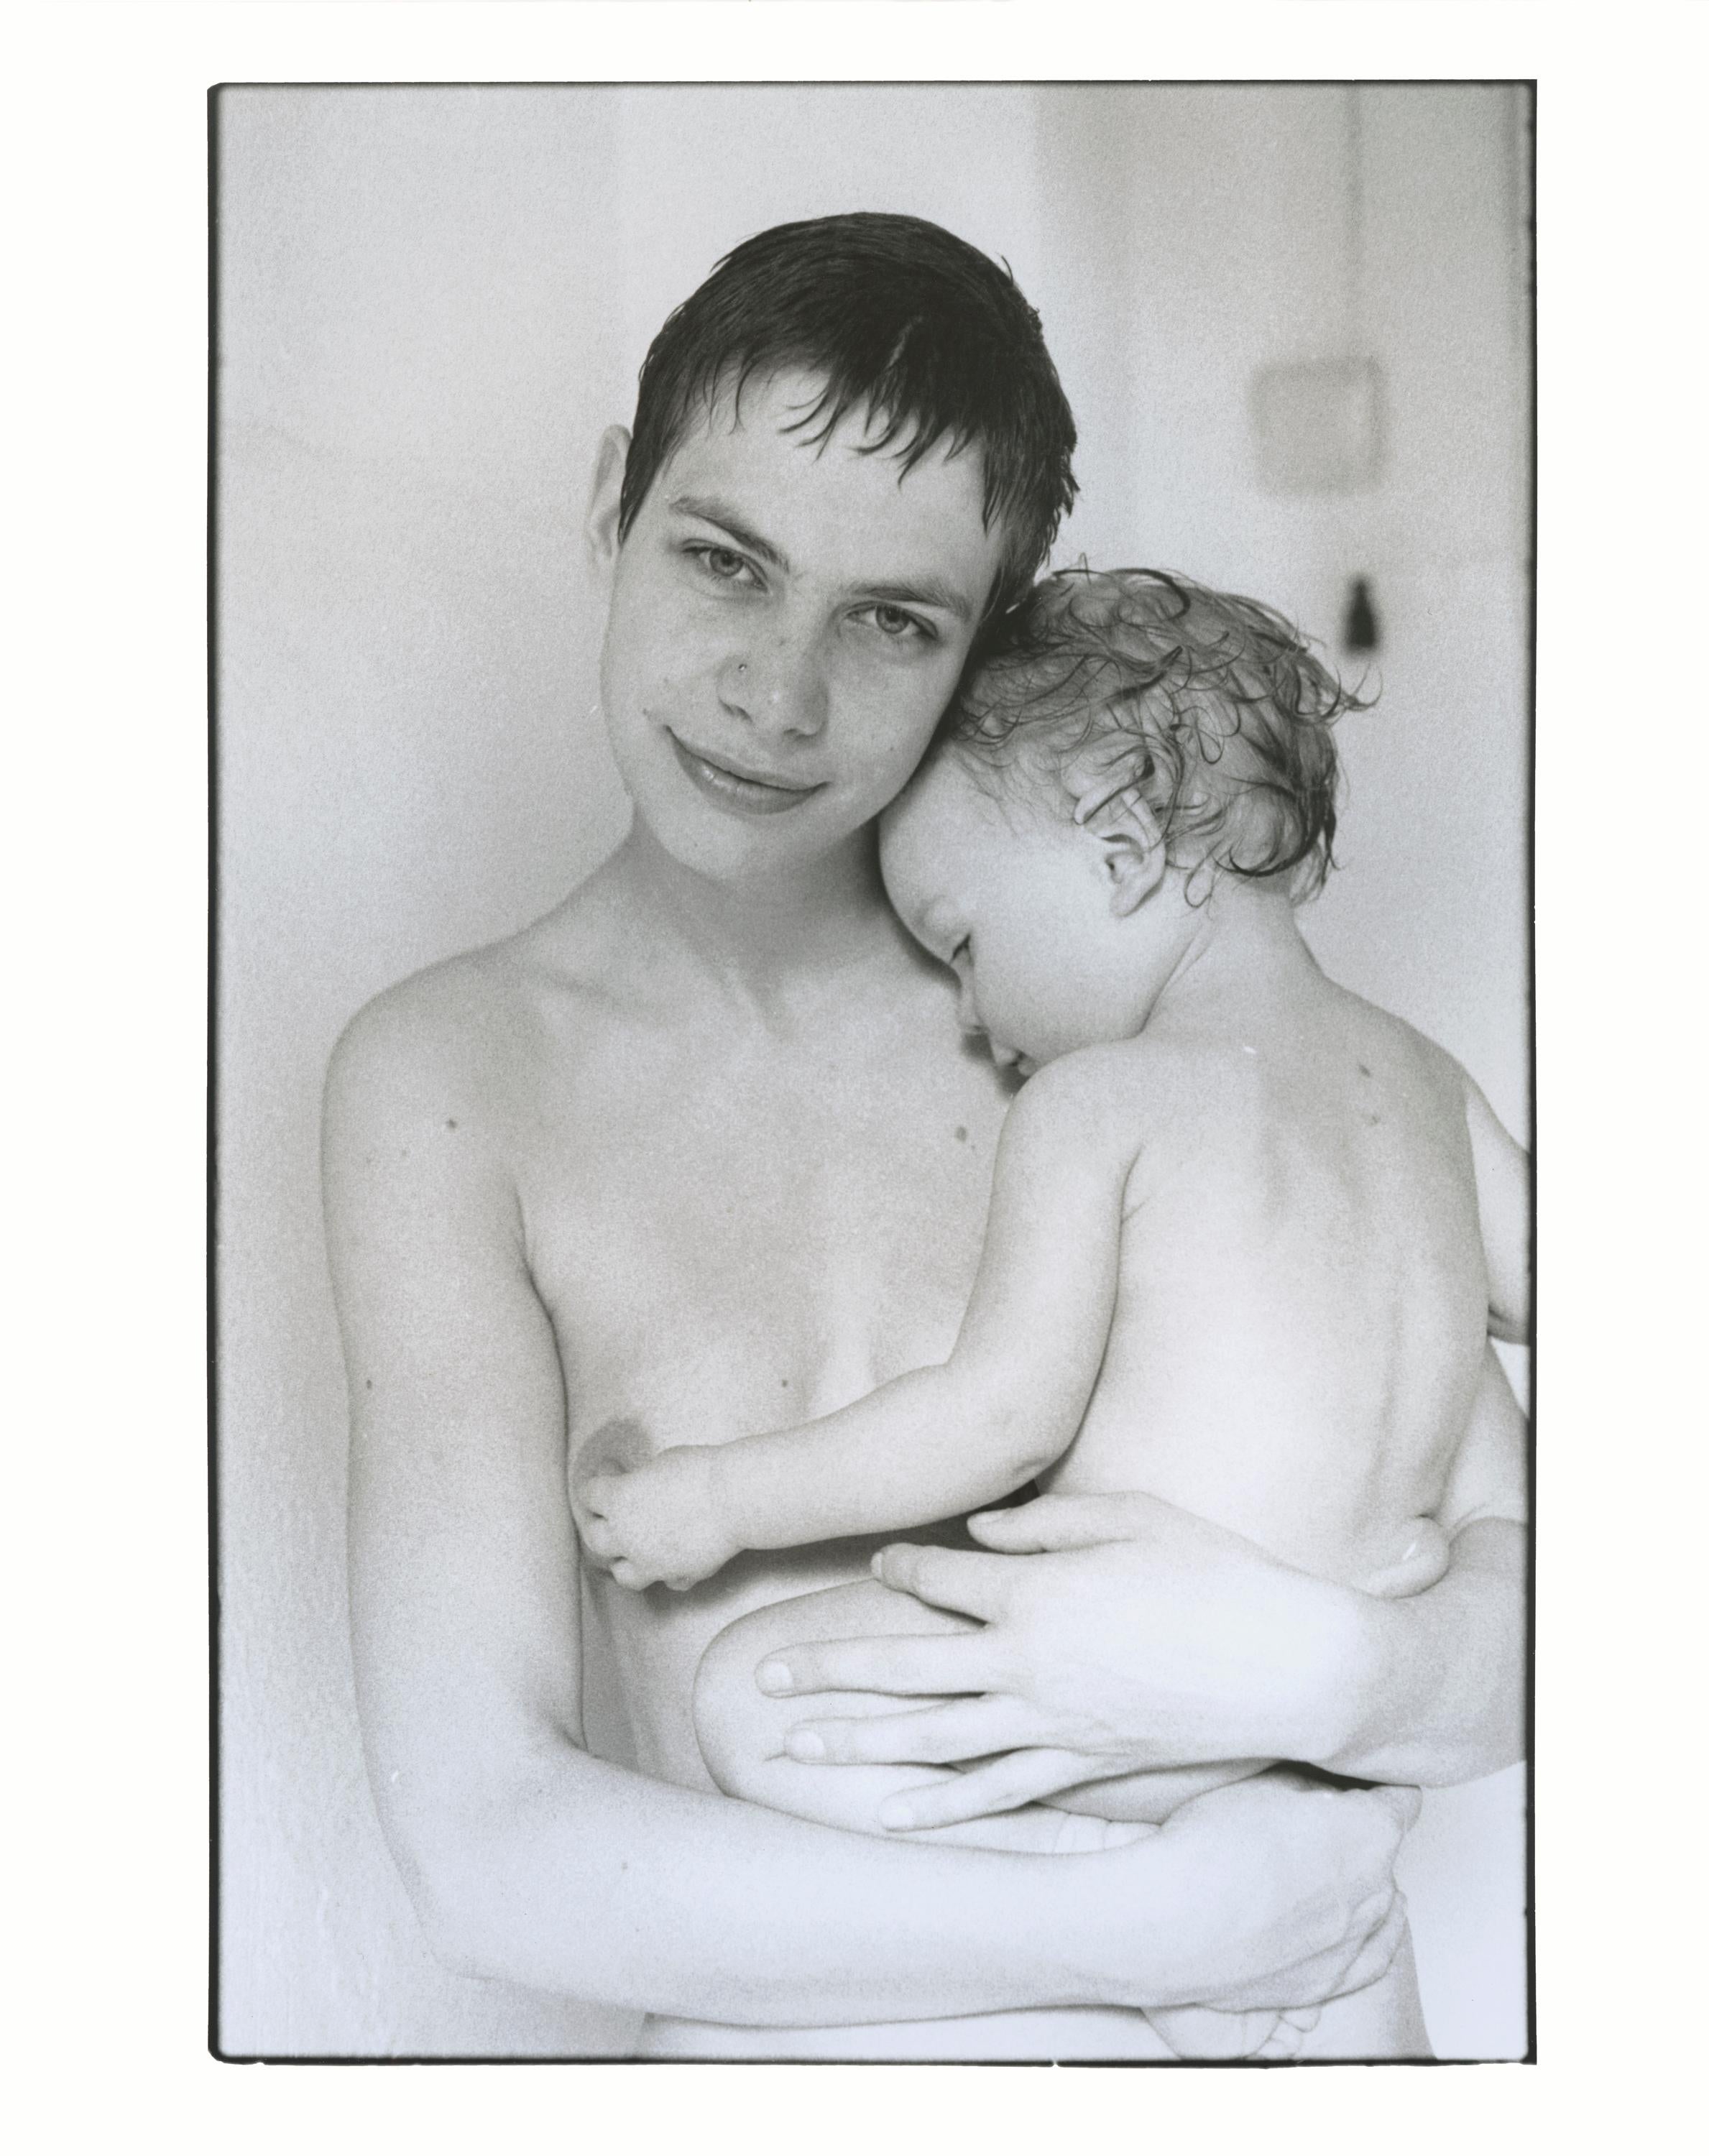 Portrait Photograph Stefanie Schneider - Birgit and Paul, 1996 - photographie analogique, femmes